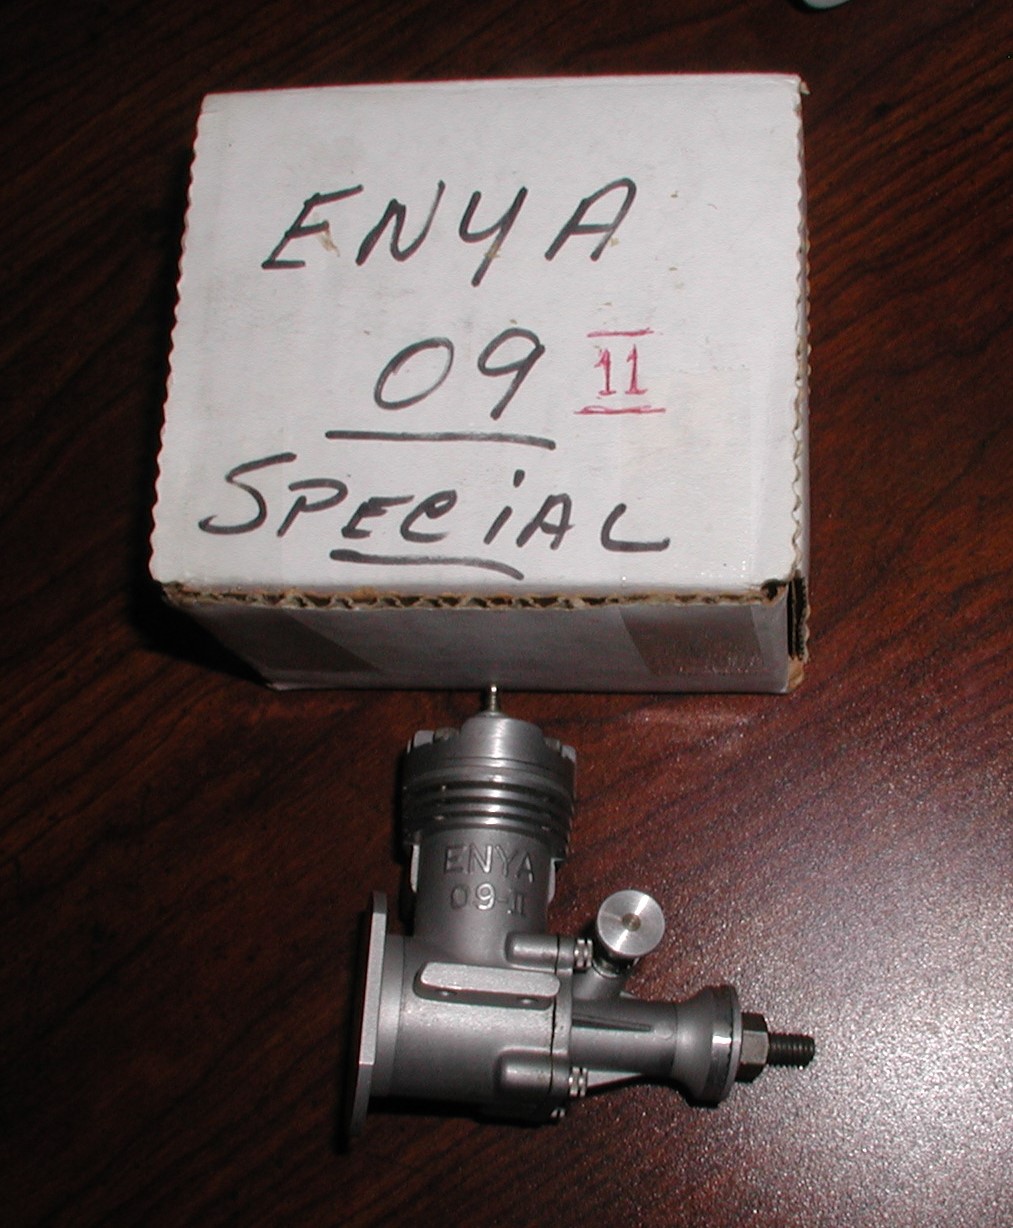 Last of the Enya Diesel engines purchased off of Enya's website. Enya_033